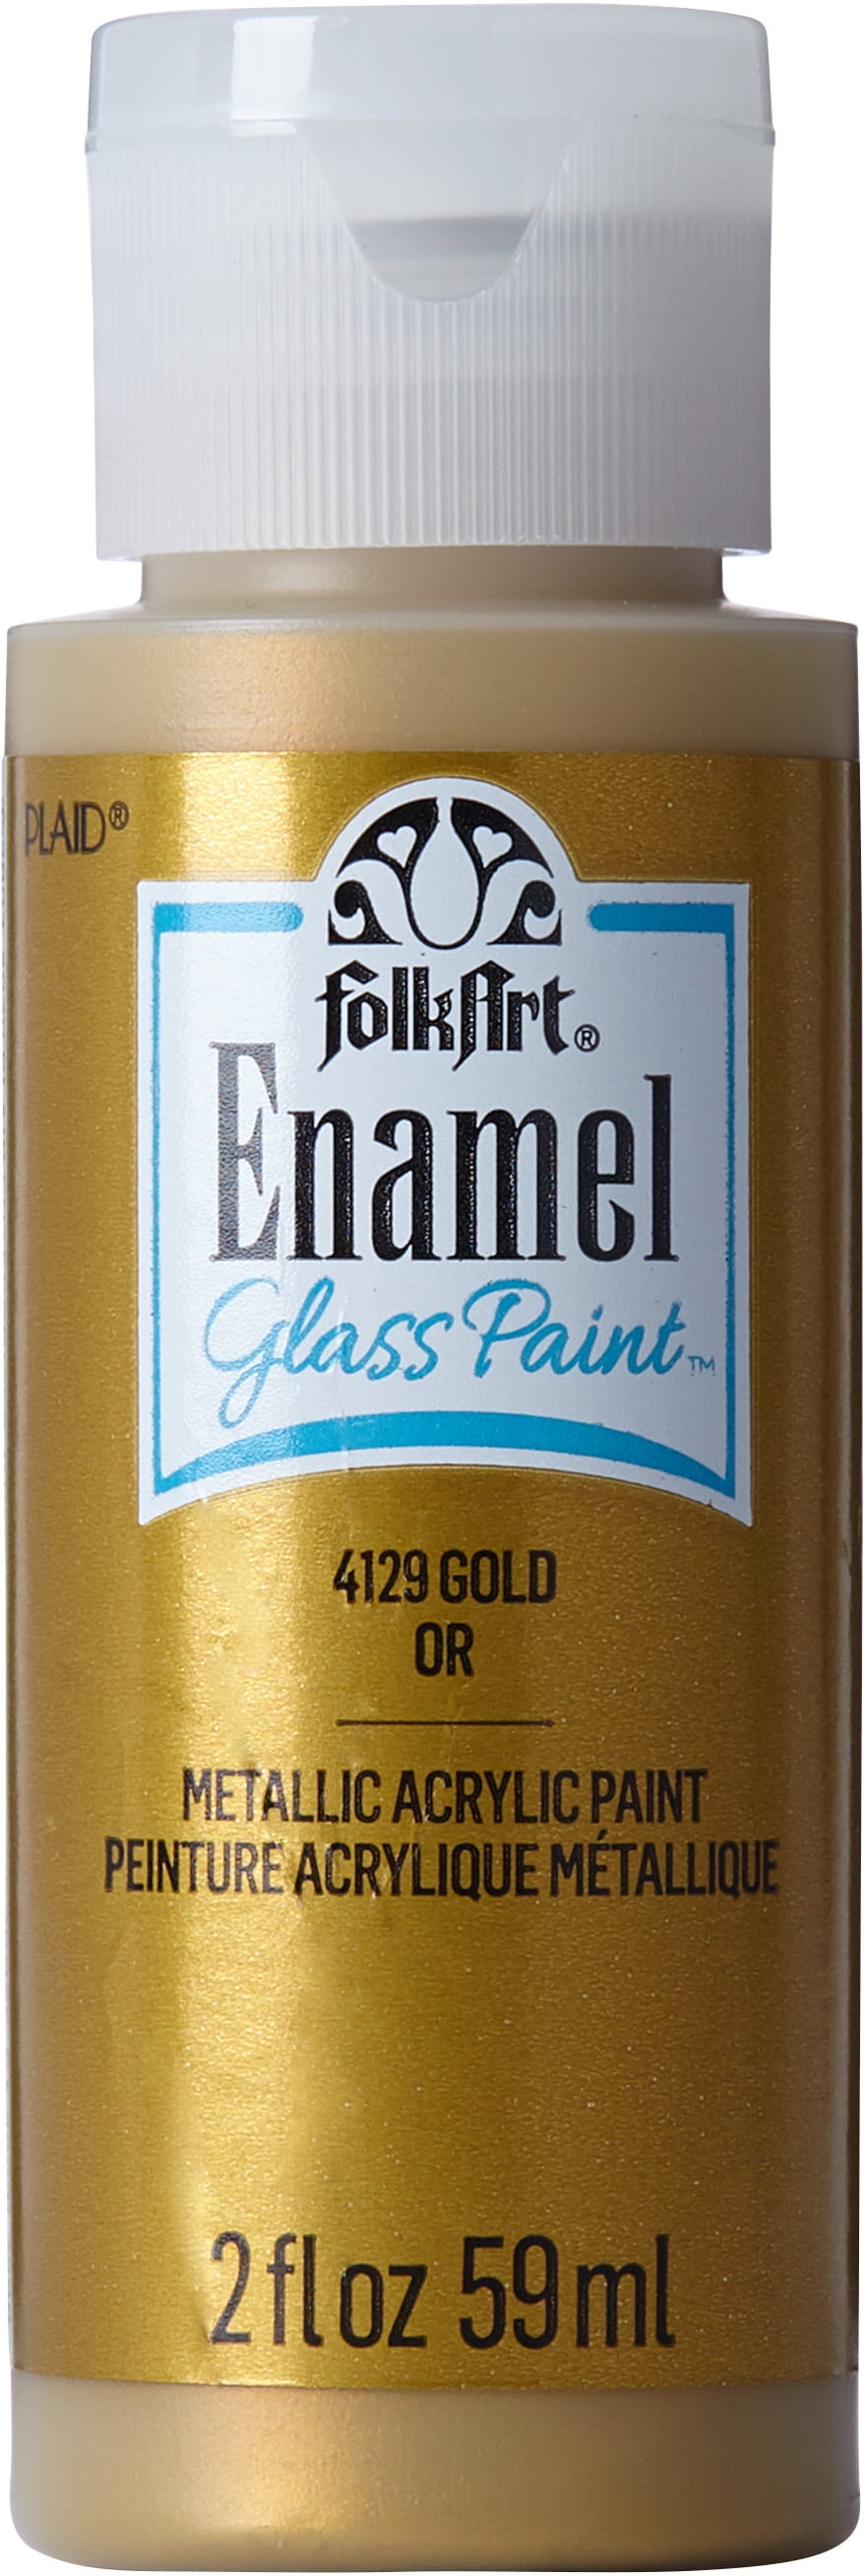 FolkArt Gloss Finish Acrylic Enamel Craft Set Designed for